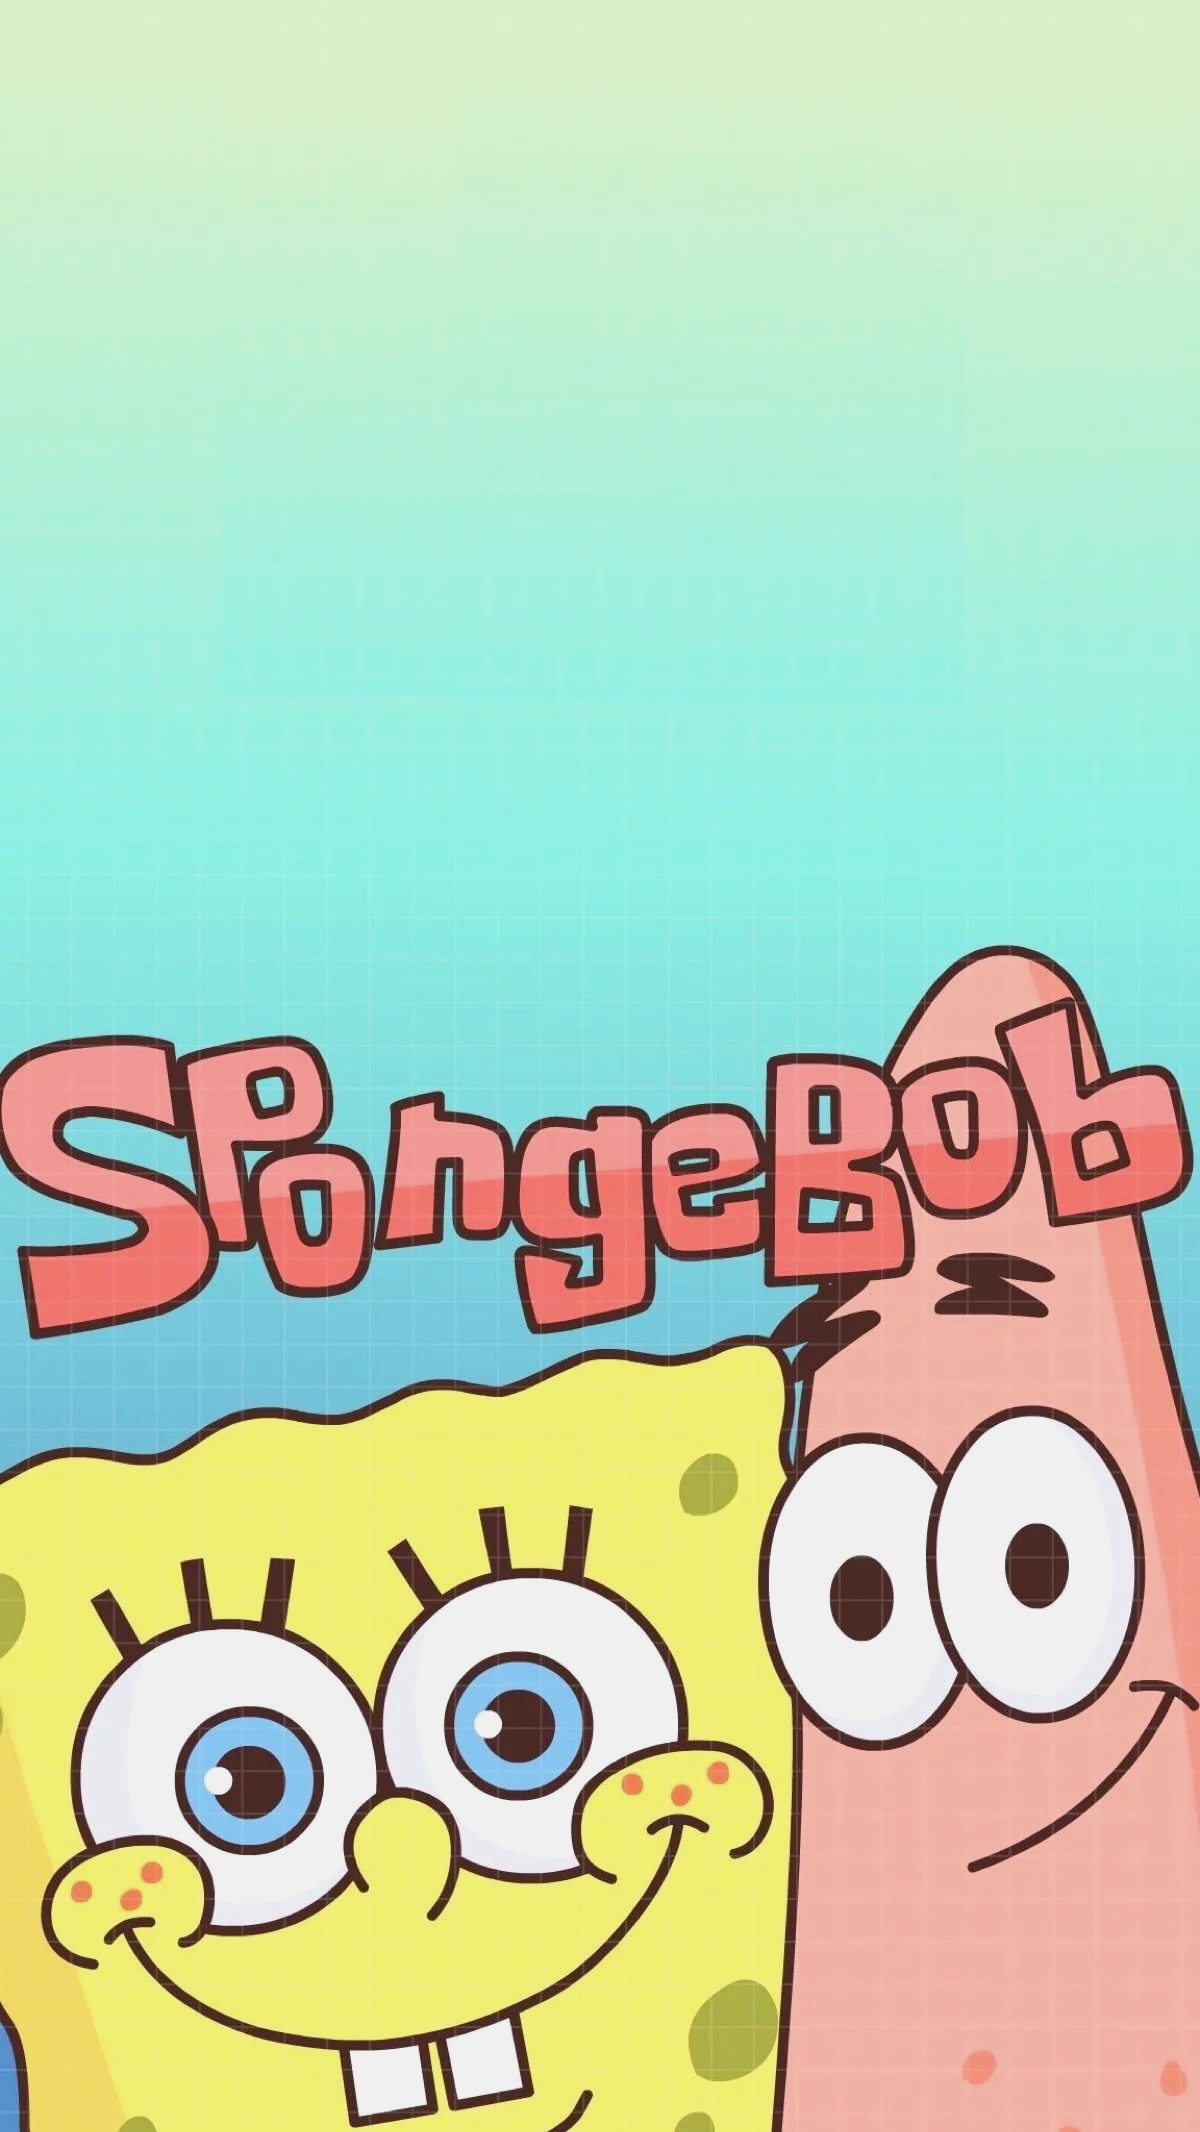 spongebob wallpaper,cartoon,text,font,illustration,happy